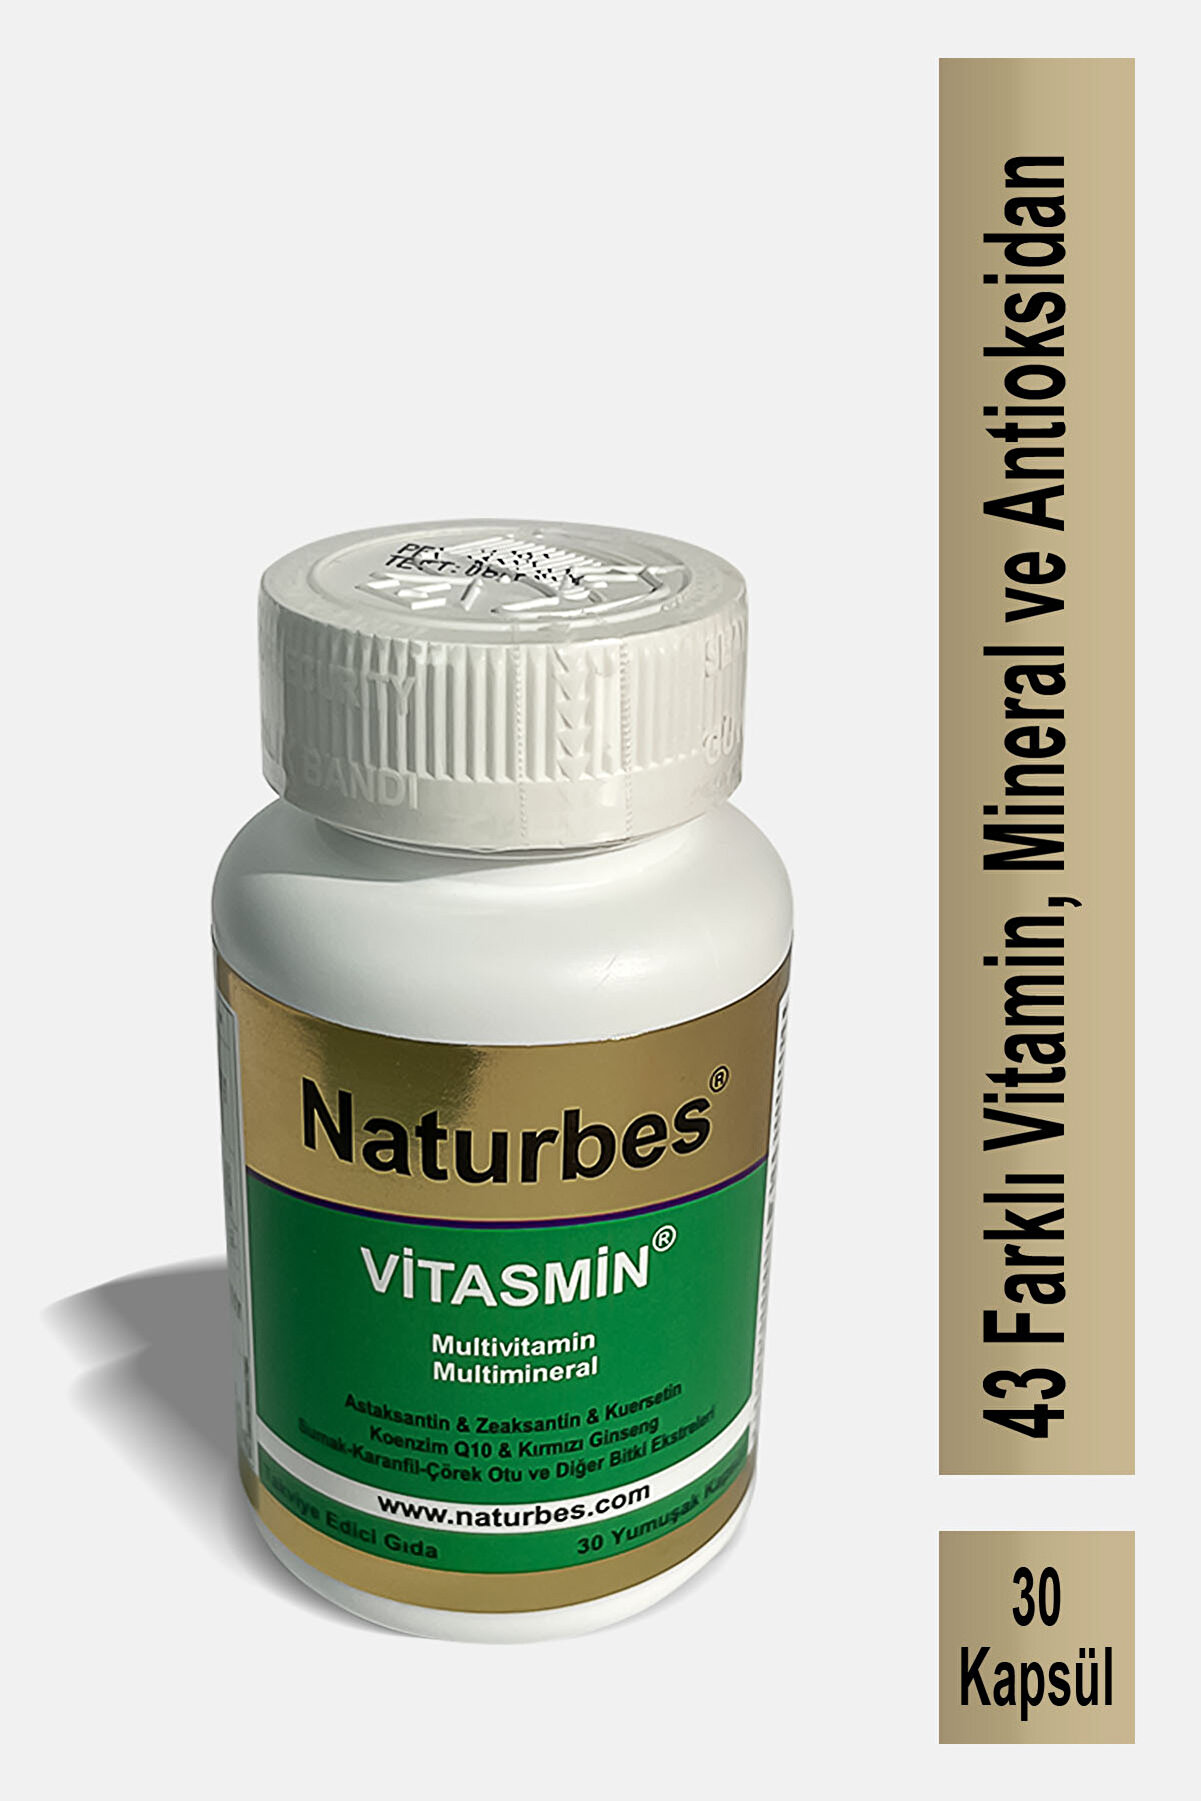 Naturbes Vitasmin 30 Kapsül Multivitamin